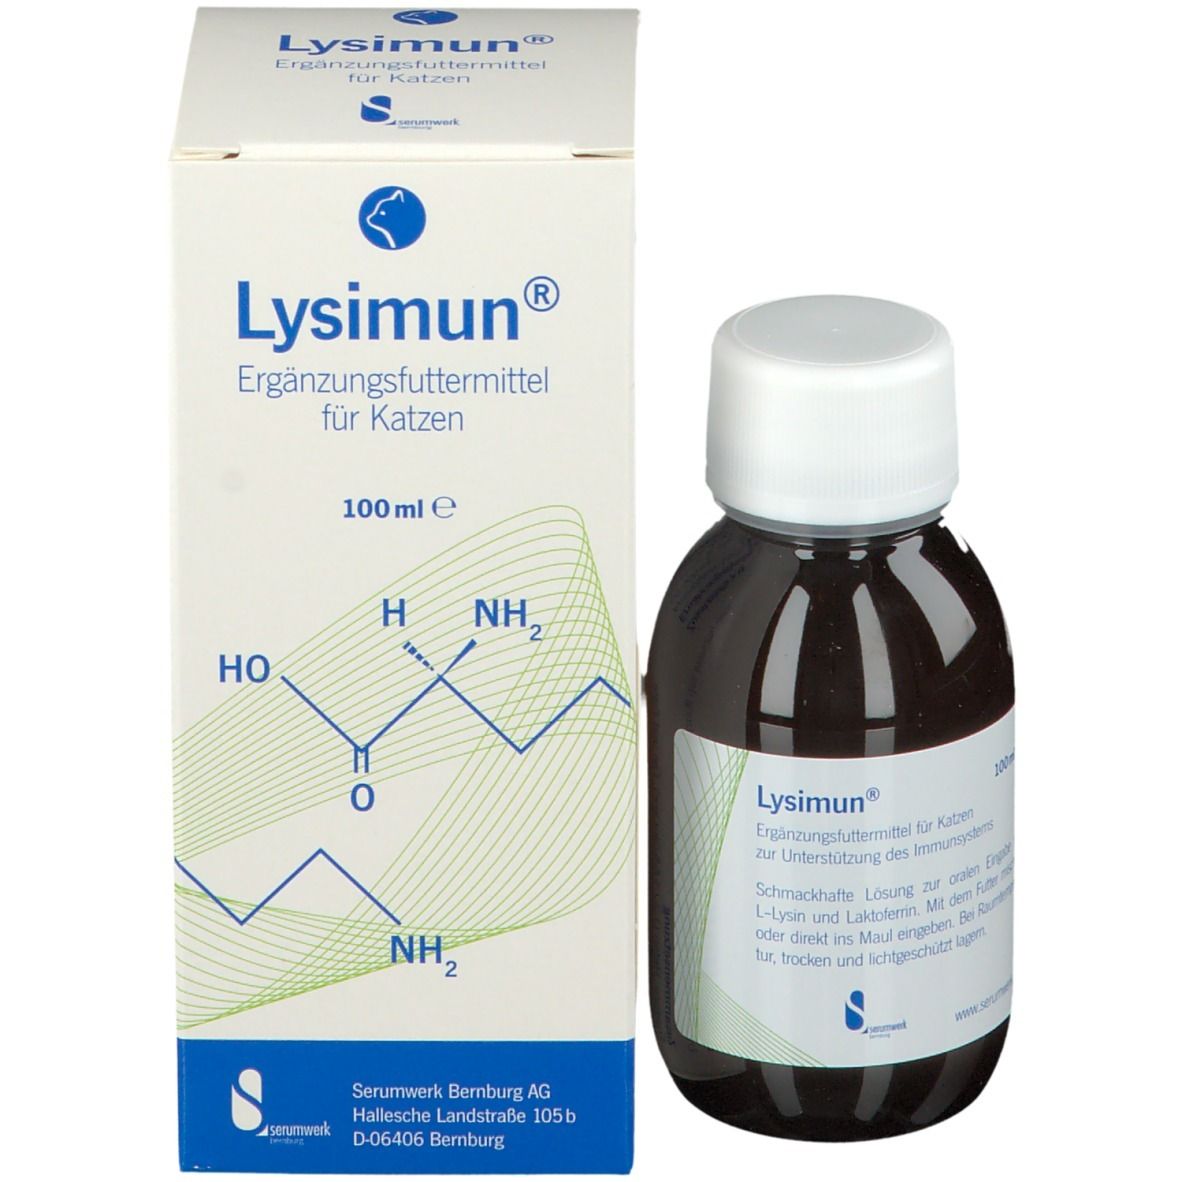 LYsimun® Ergänzungsfuttermittel für Katzen